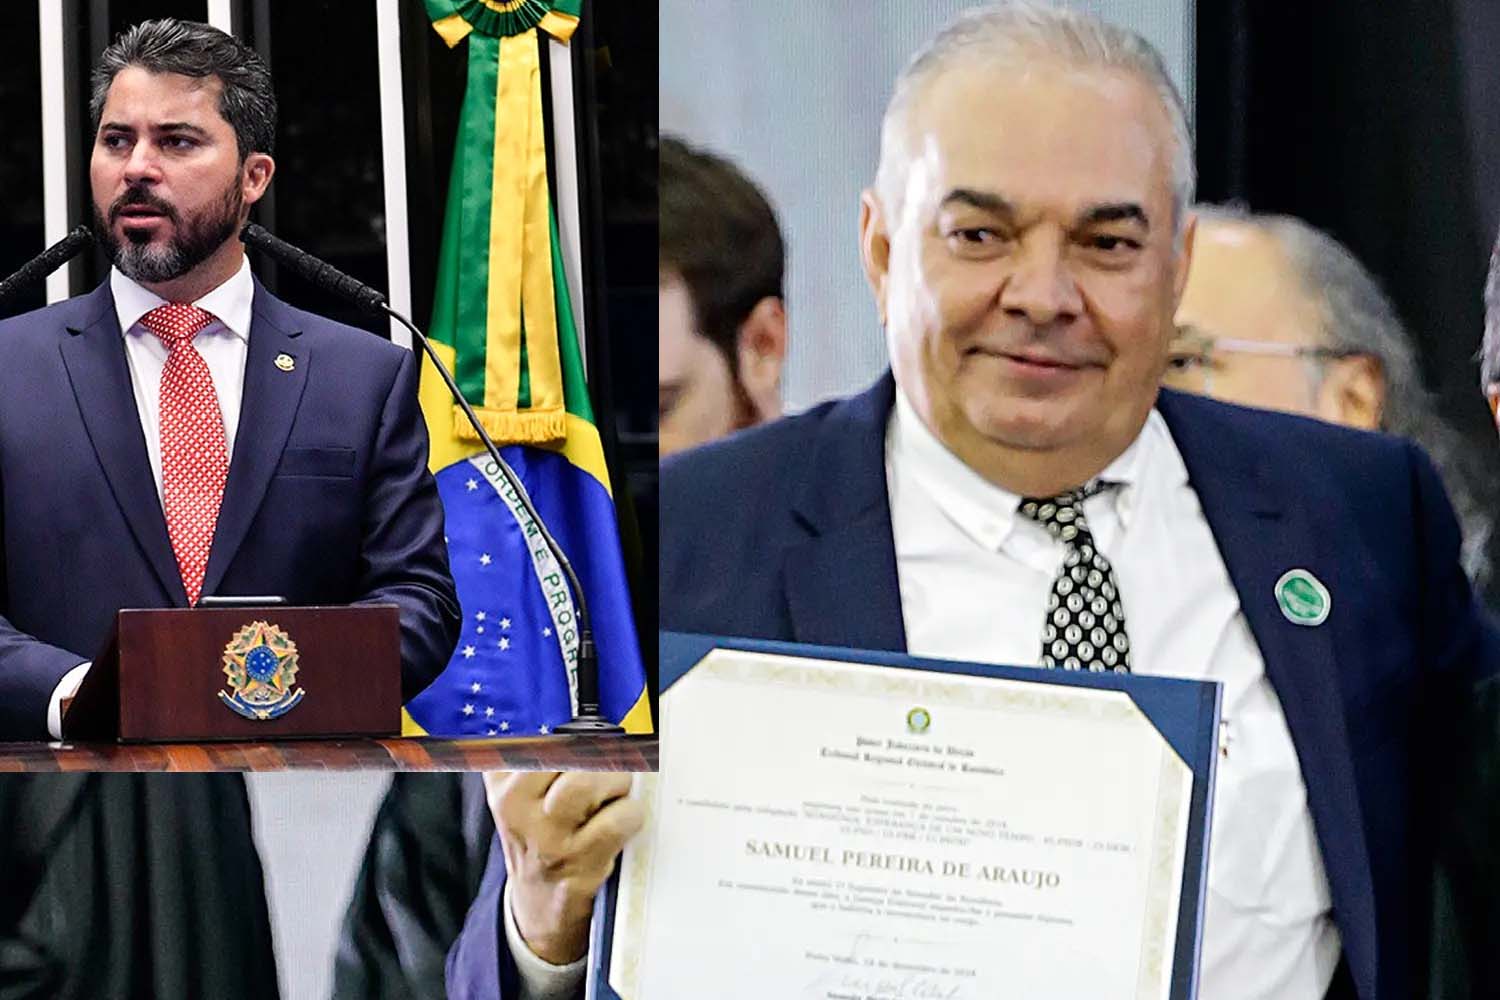 NOVIDADE: Marcos Rogério pede licença e RO tem novo senador por 120 dias